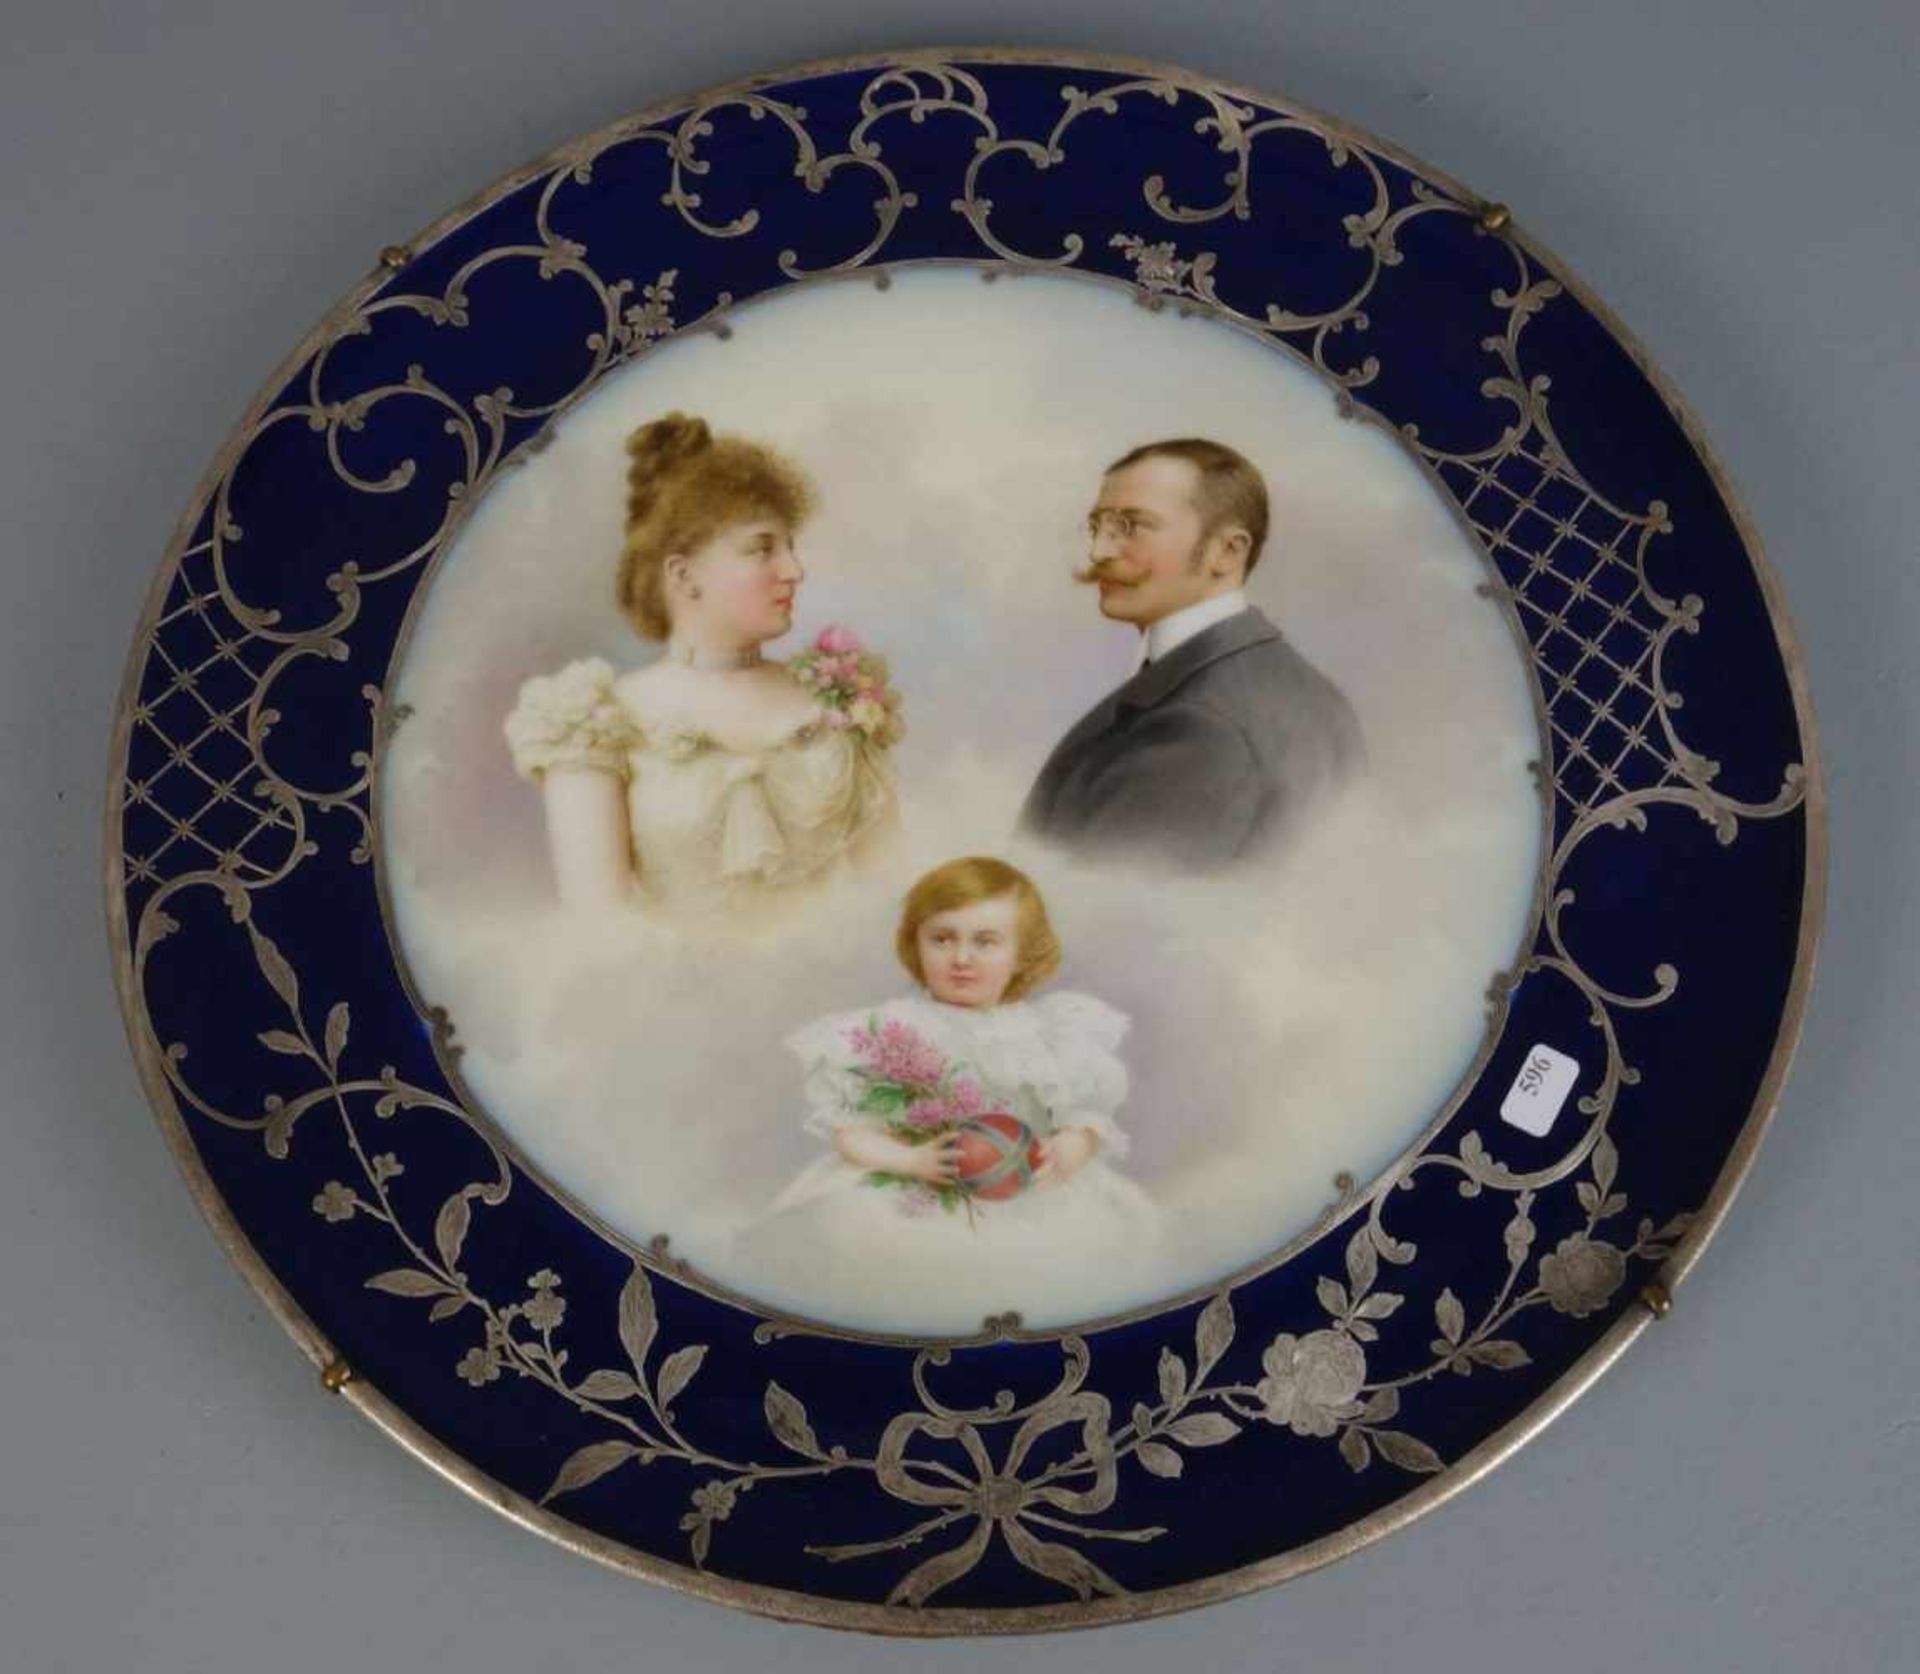 BILDTELLER / WANDTELLER / plate, Österreich - Wien, um 1900, Porzellan, glasurblau gemarkt mit